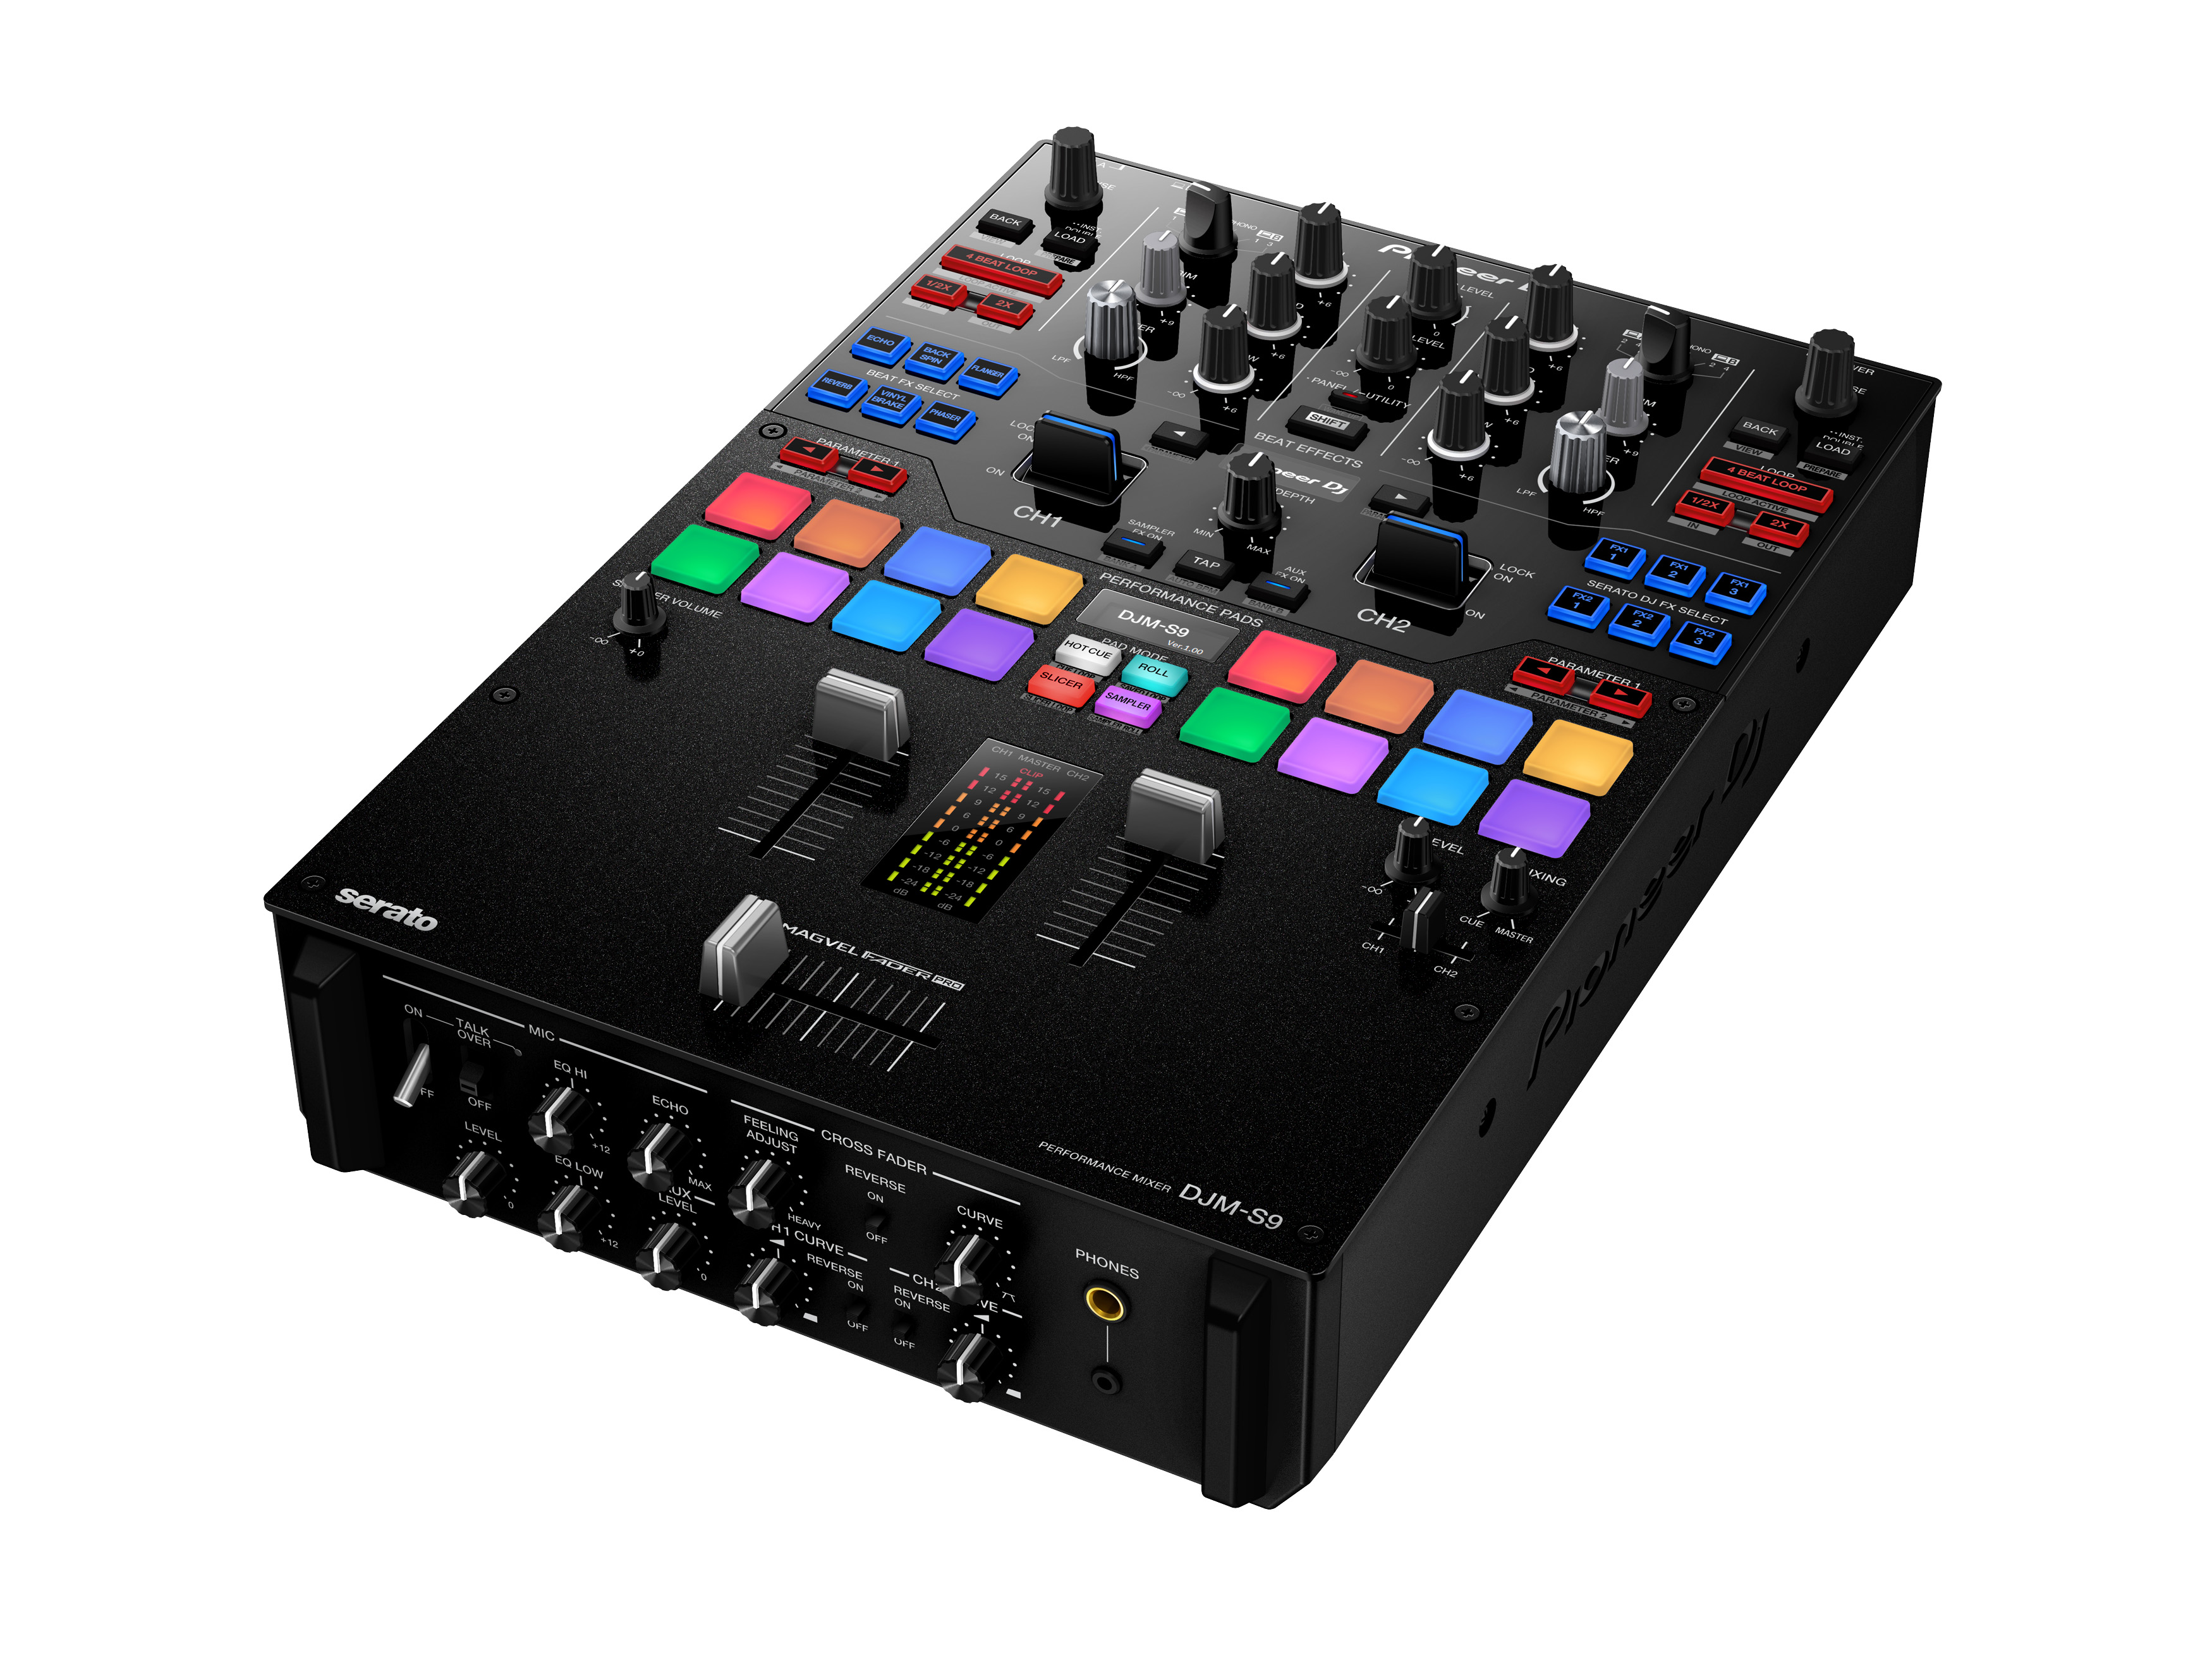 Presentado oficialmente el nuevo mixer Pioneer DJM-S9